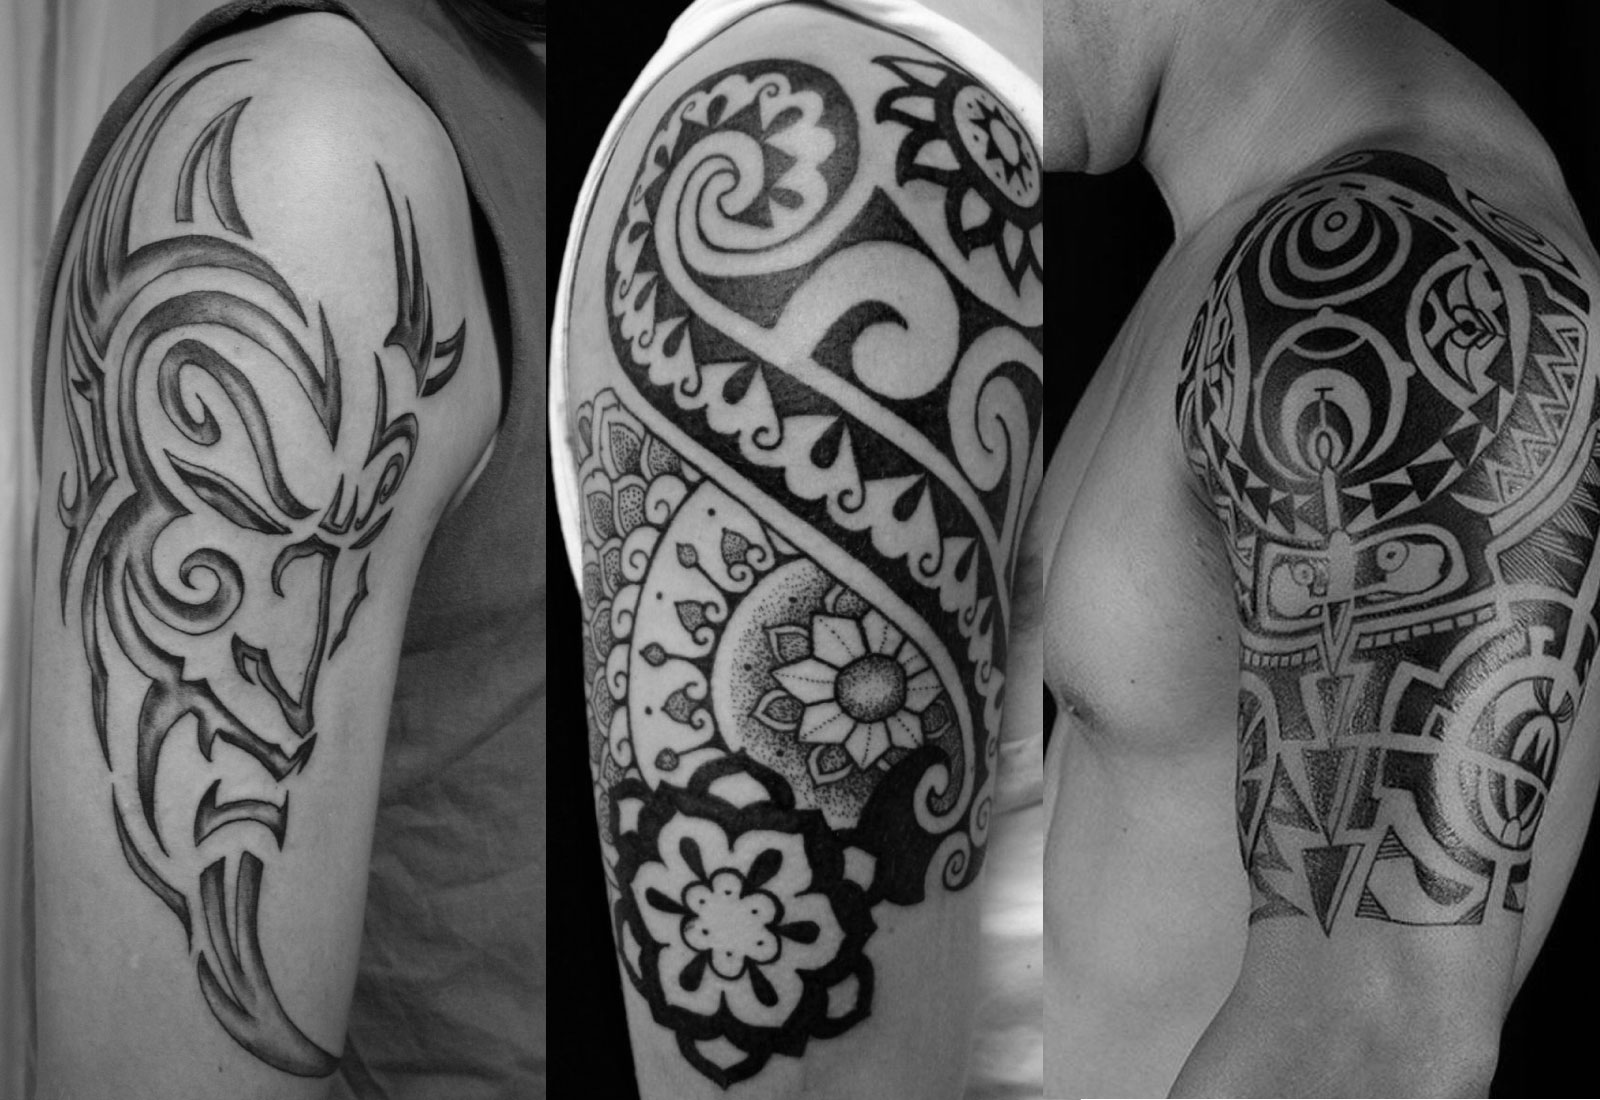 Portuguese Tattoo Ideas